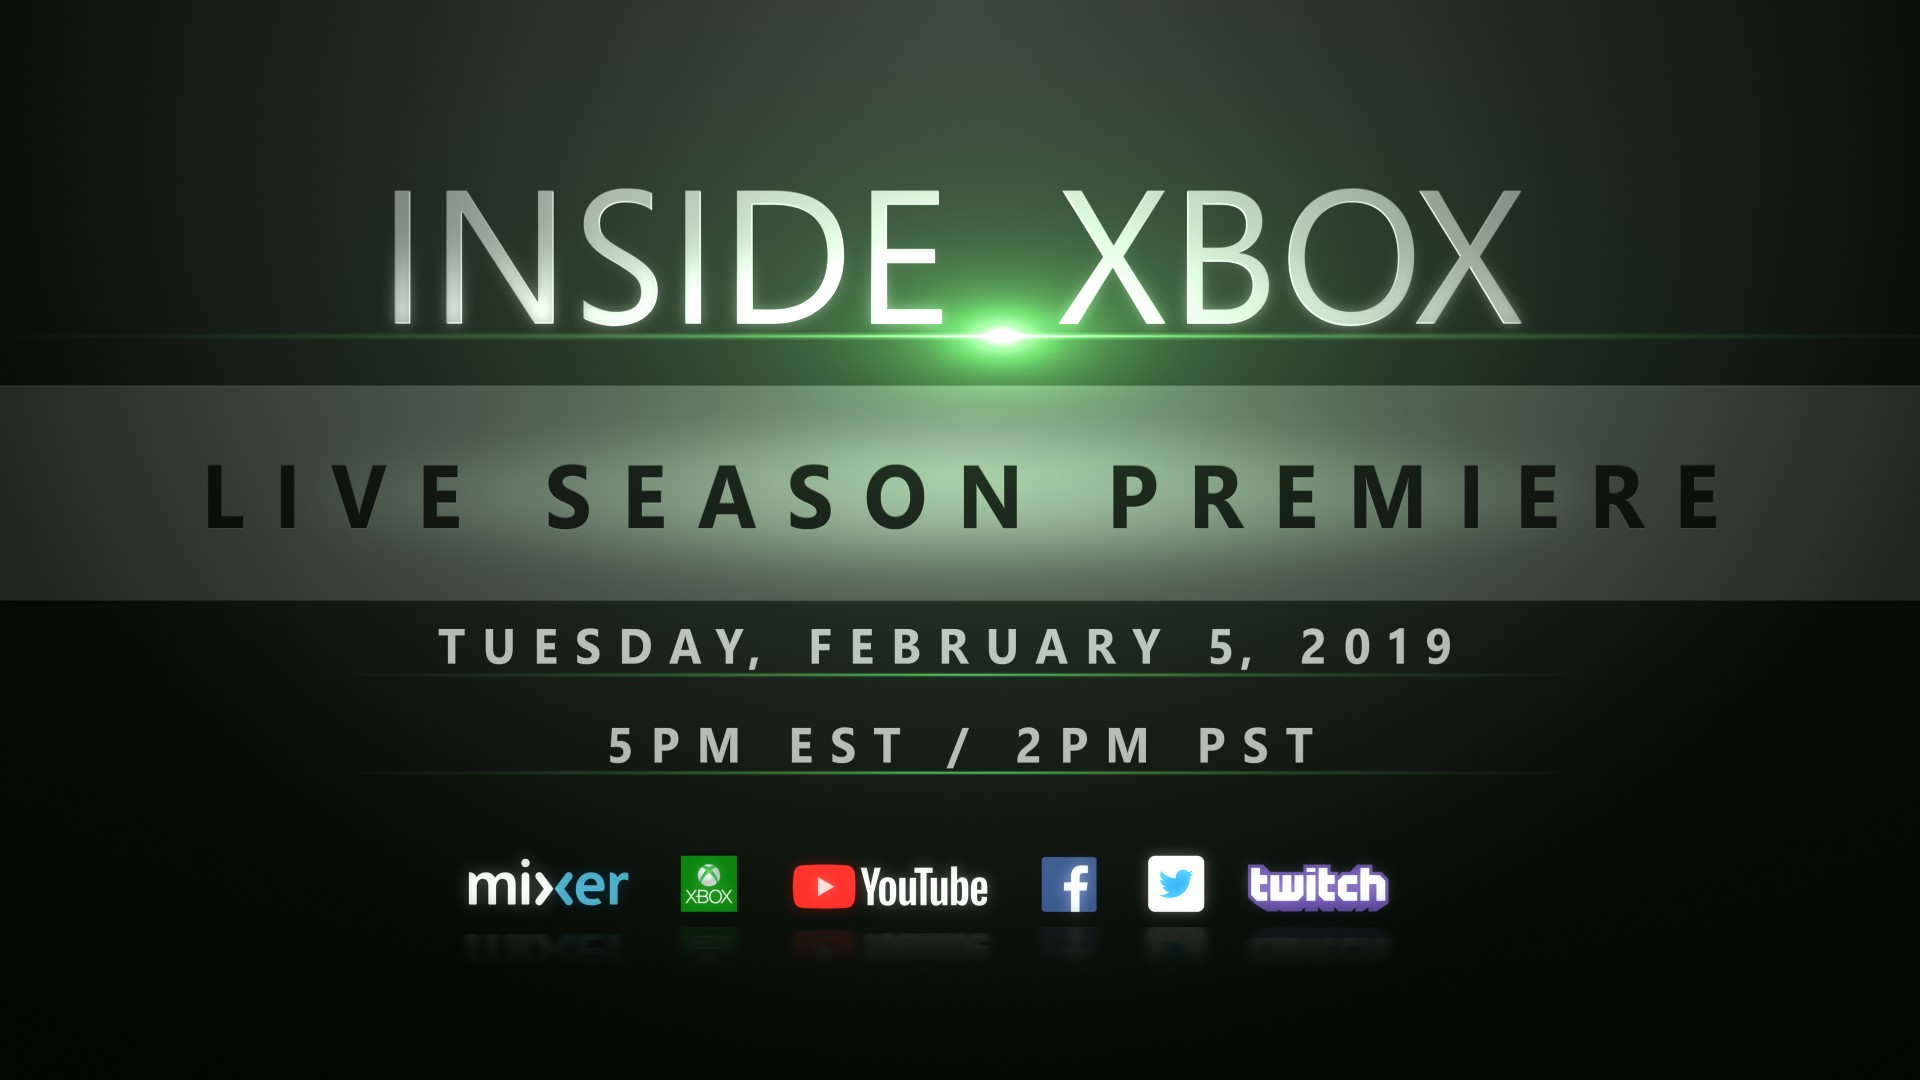 This Week on Xbox: May 3, 2019 2019_Feb05_Inside_Xbox_Promo1_Thumbnail_16x9_V2.jpg